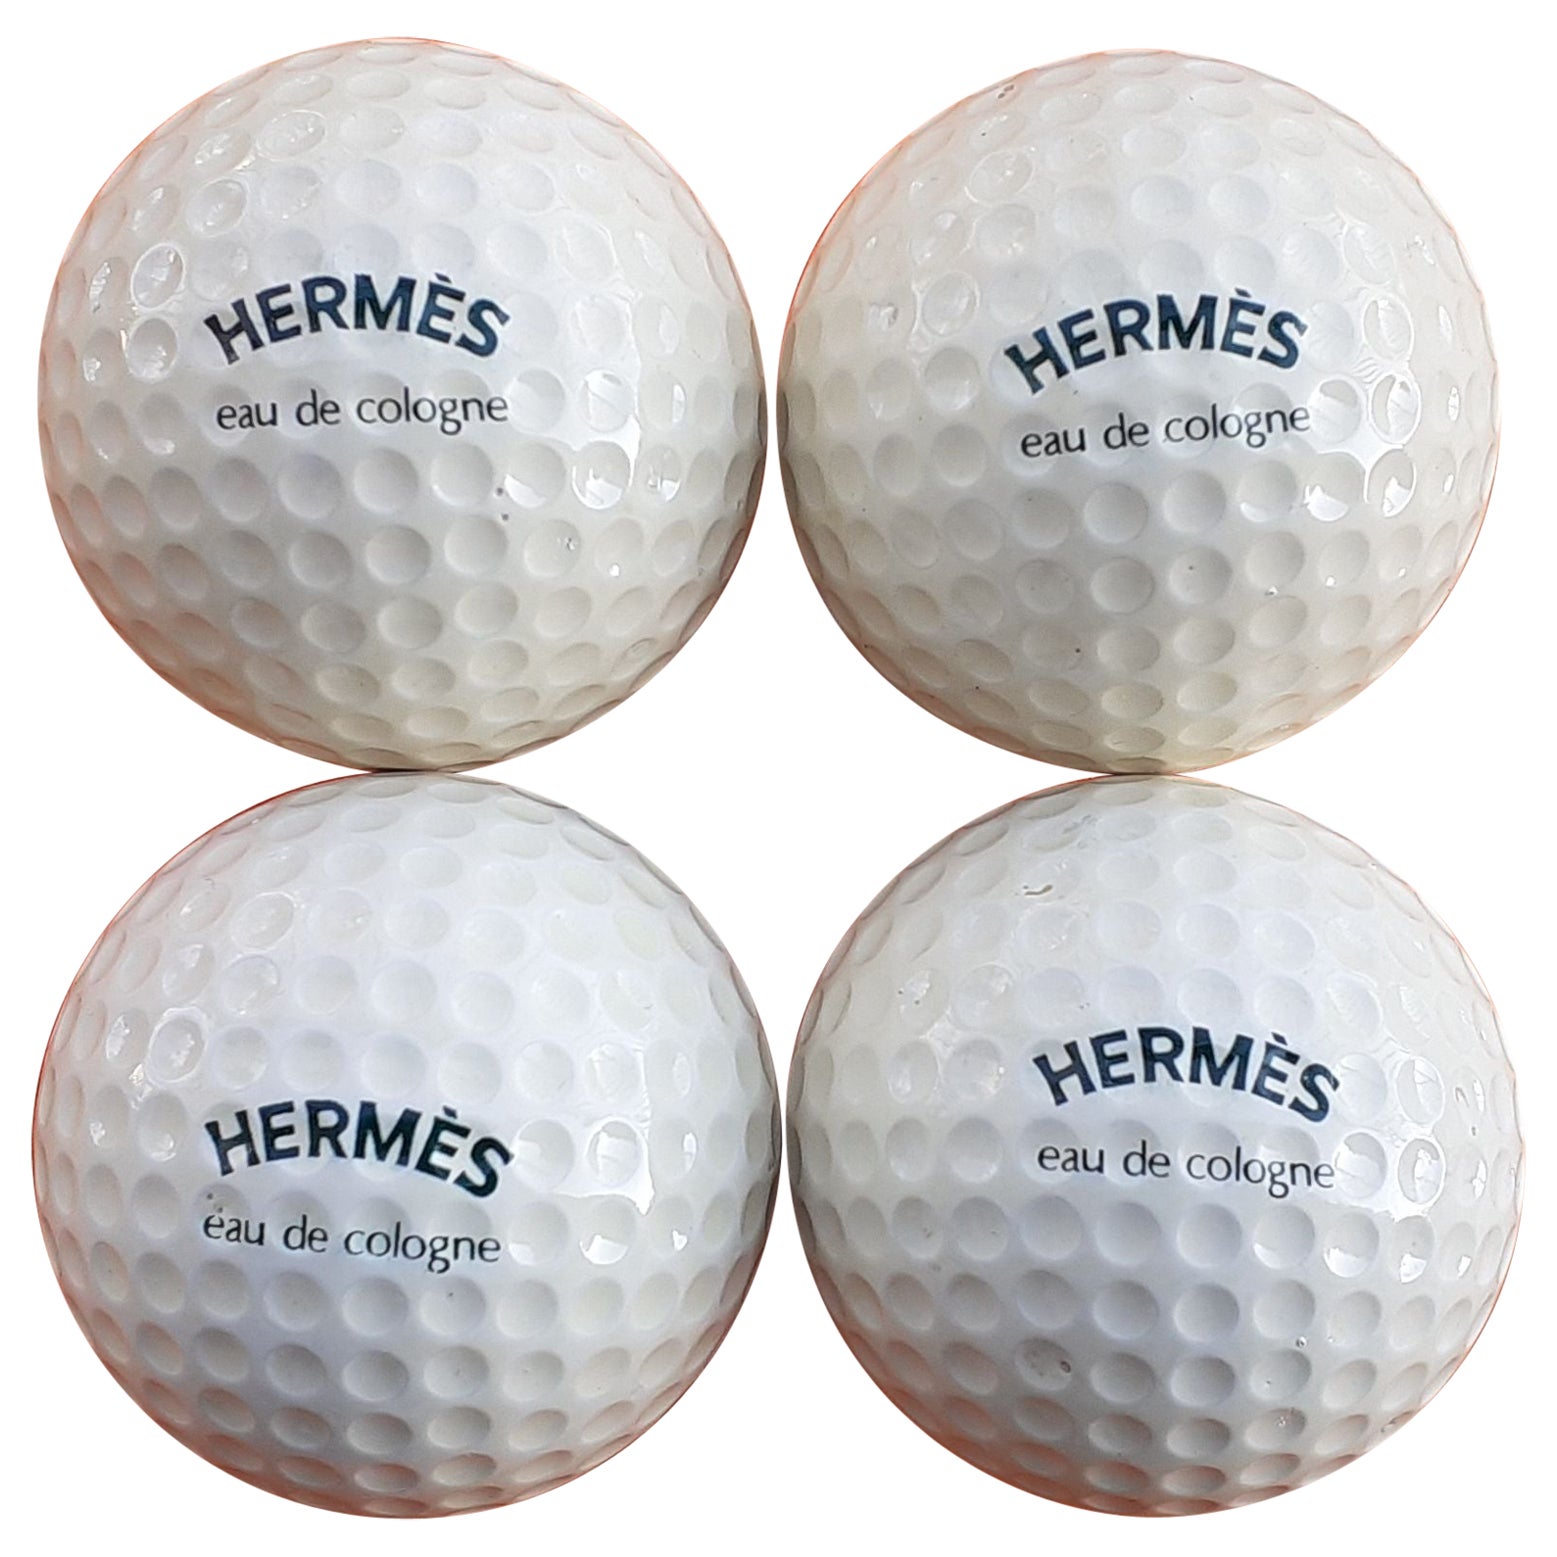 Rare jeu de 4 balles de golf Hermès